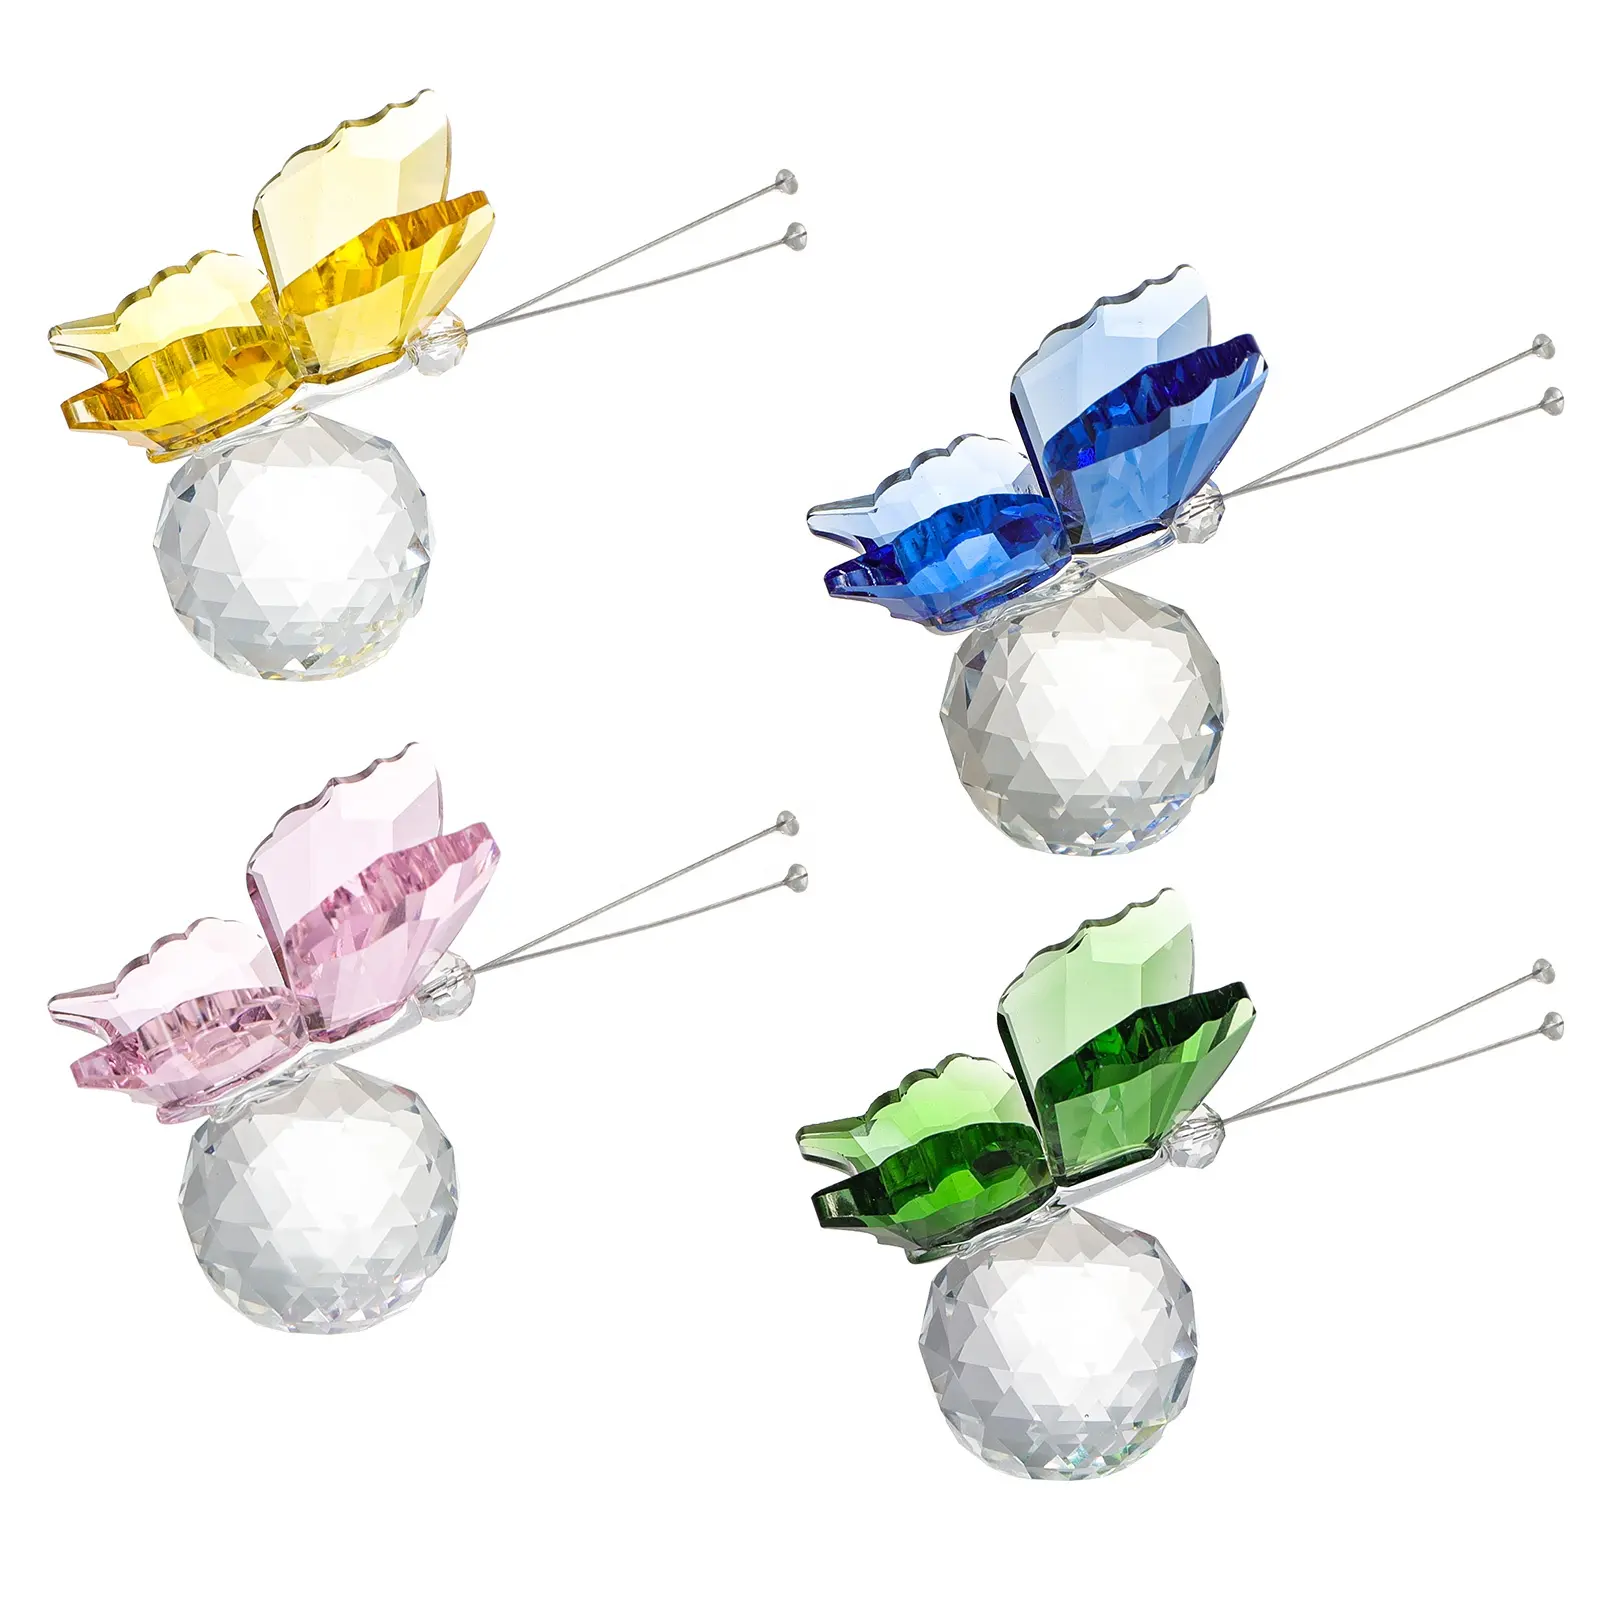 Kristallen Vliegende Vlinder Met Bolbasis Glazen Dierenfiguurtjes Schattige Ambachtelijke Huwelijksgeschenken